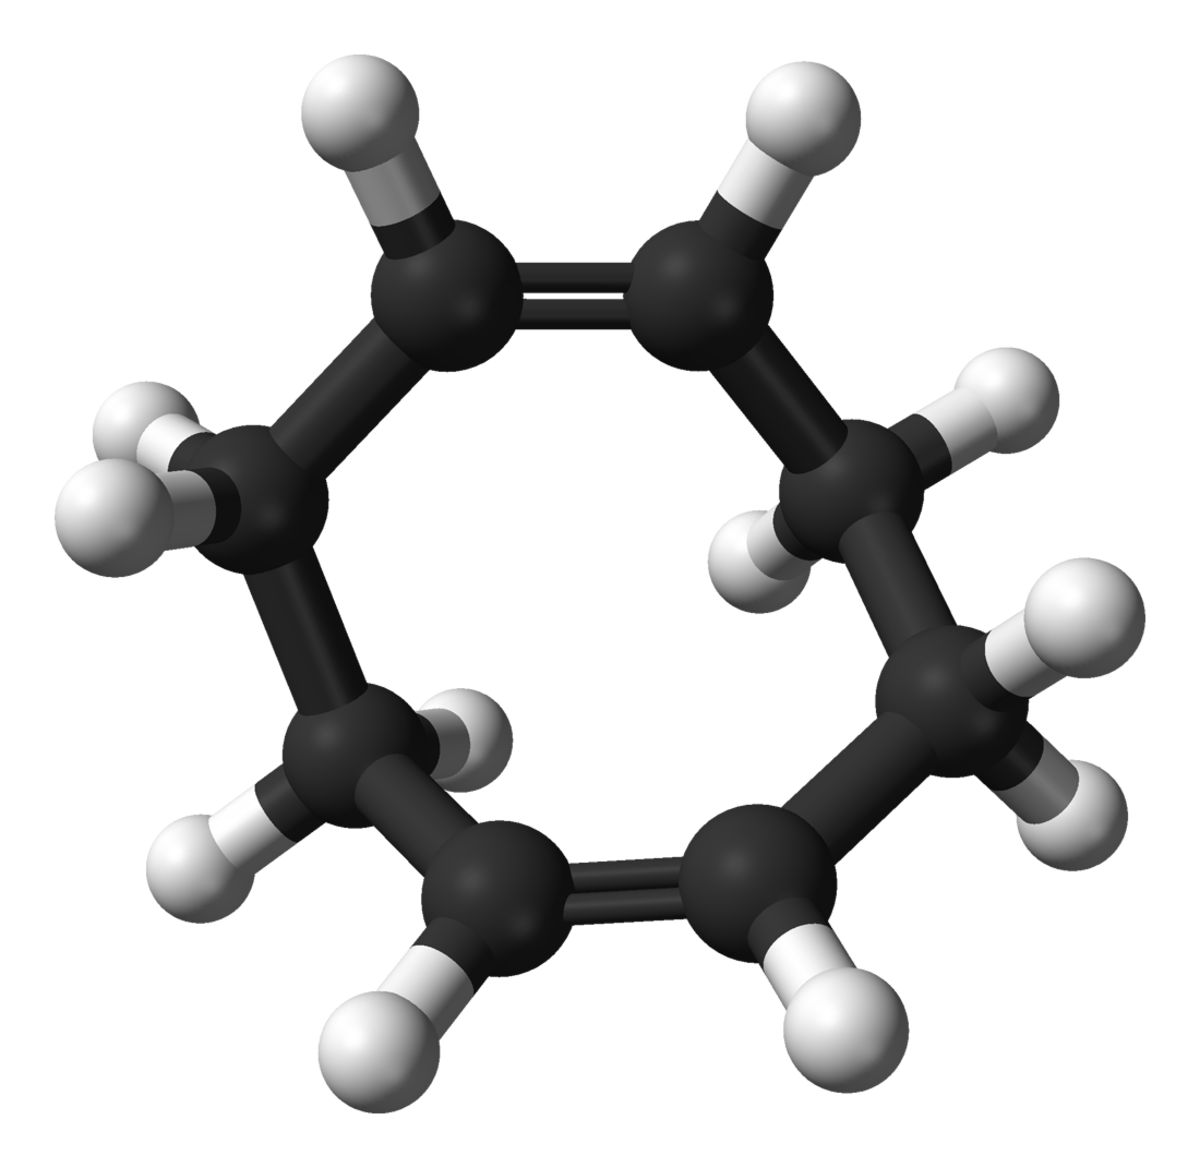 Cycloocta-1,5-diène